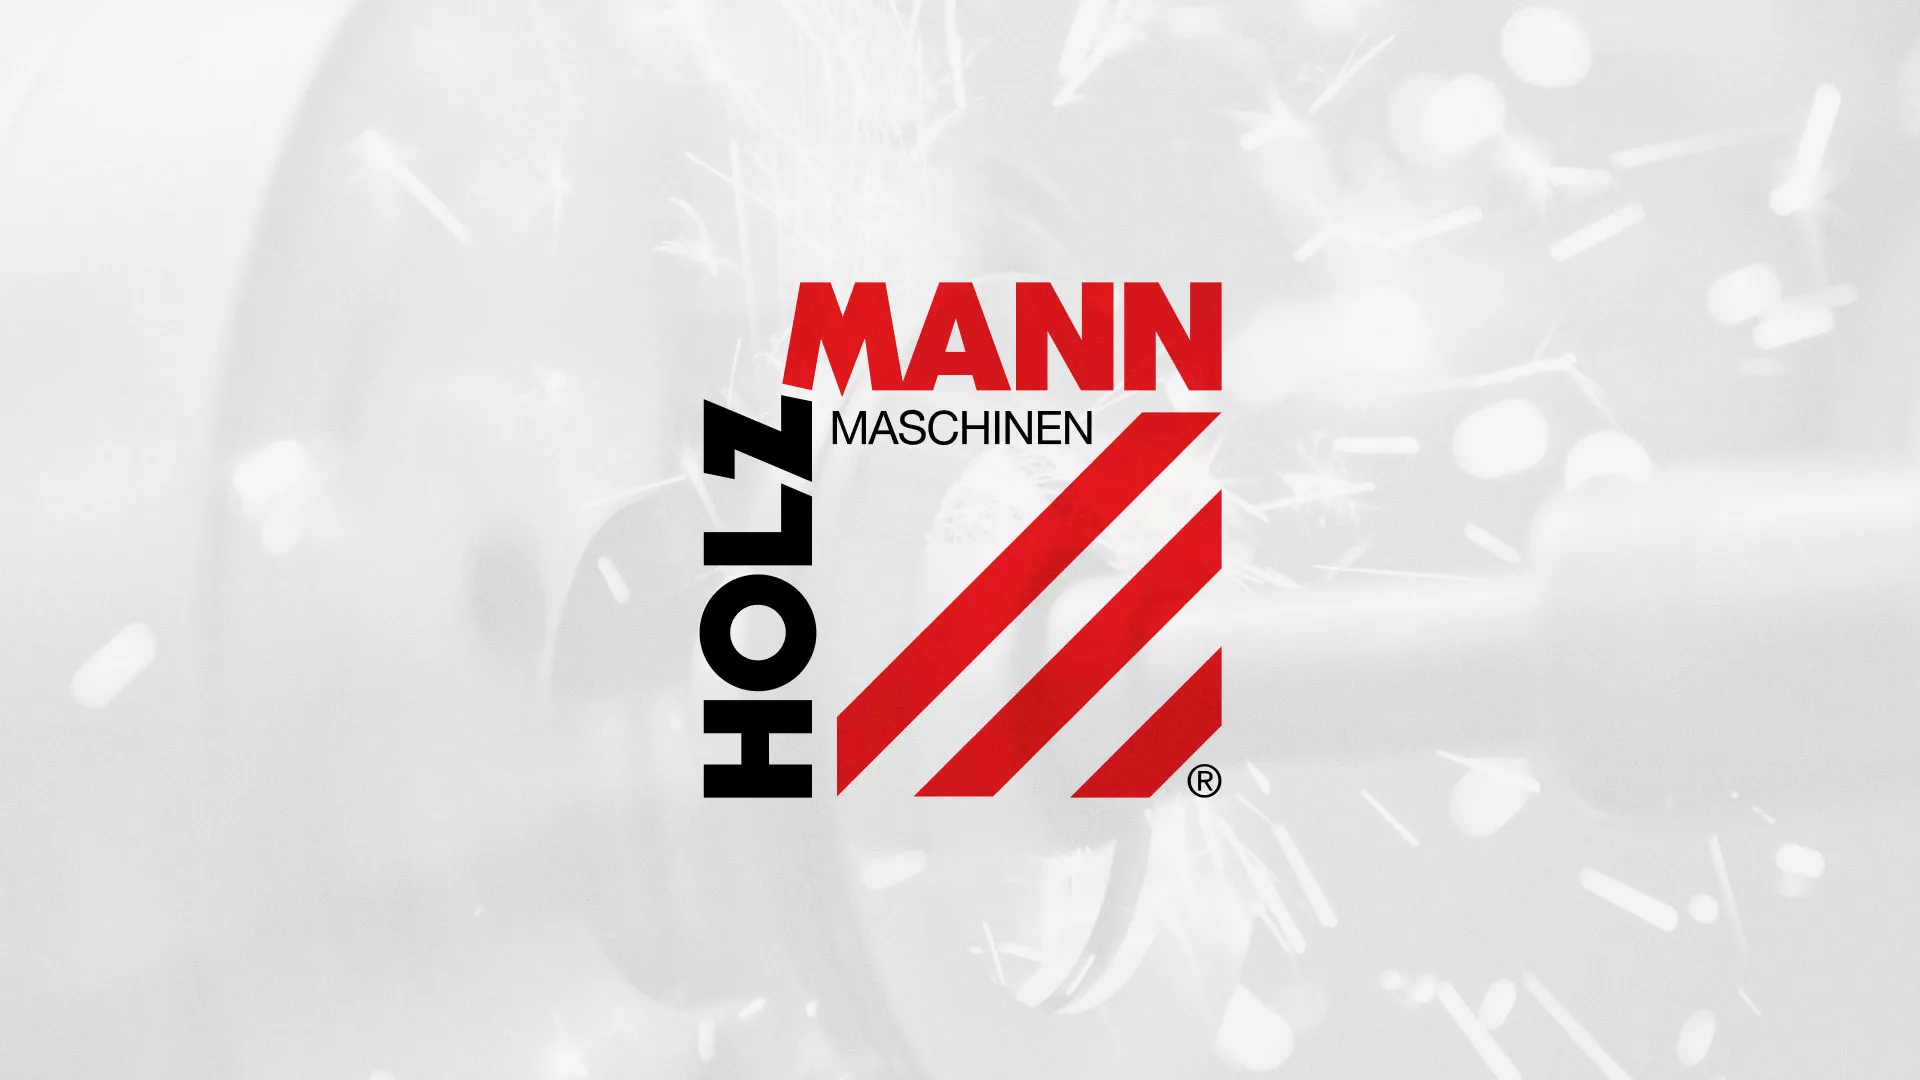 Создание сайта компании «HOLZMANN Maschinen GmbH» в Светлограде